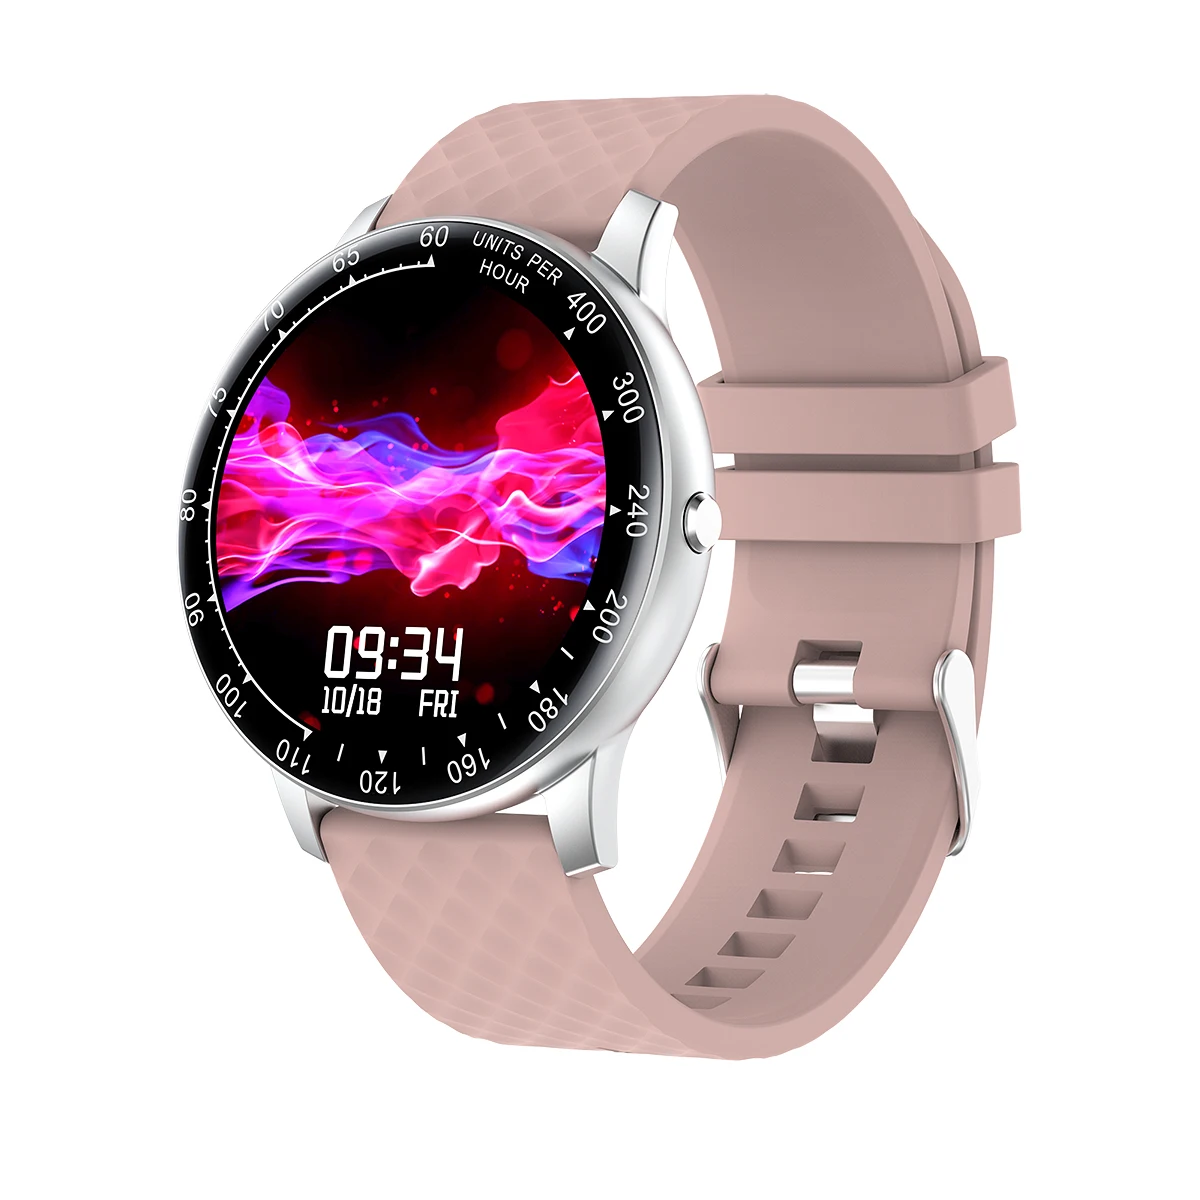 

skmei H30 reloj inteligente smart watch new smart 4.0 watches, Choose